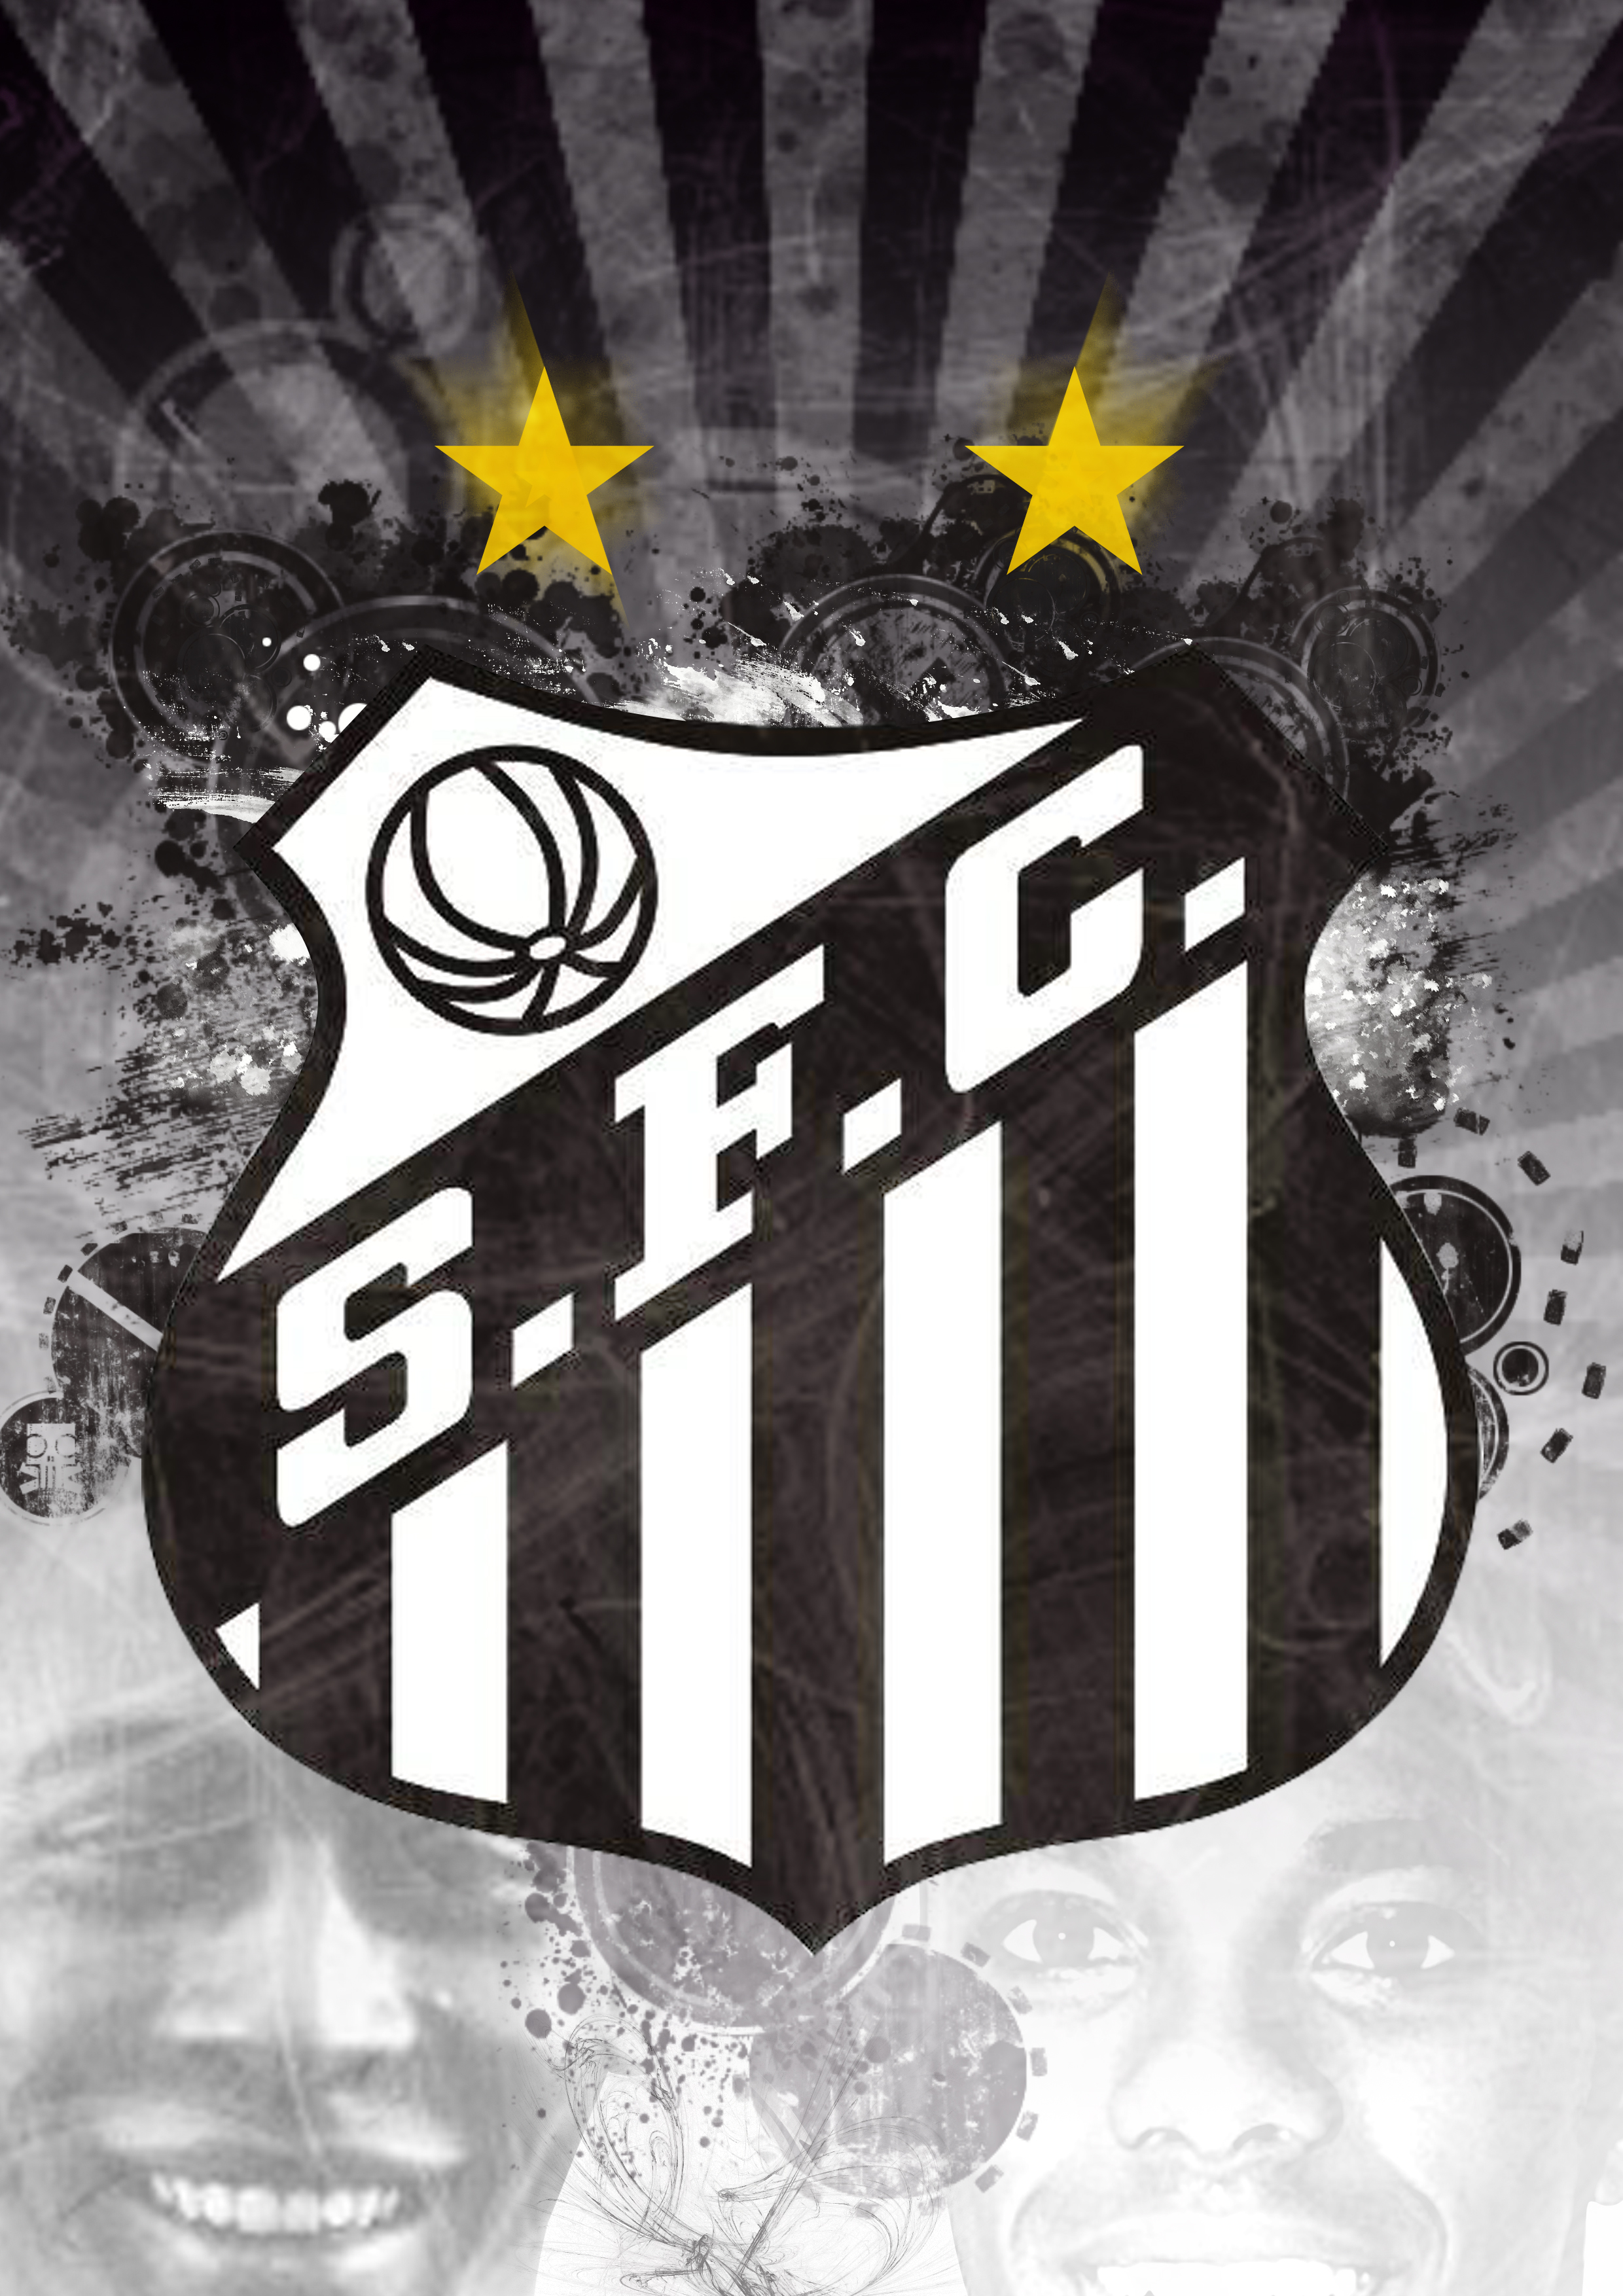 Santos Futebol Clube added a new photo. - Santos Futebol Clube